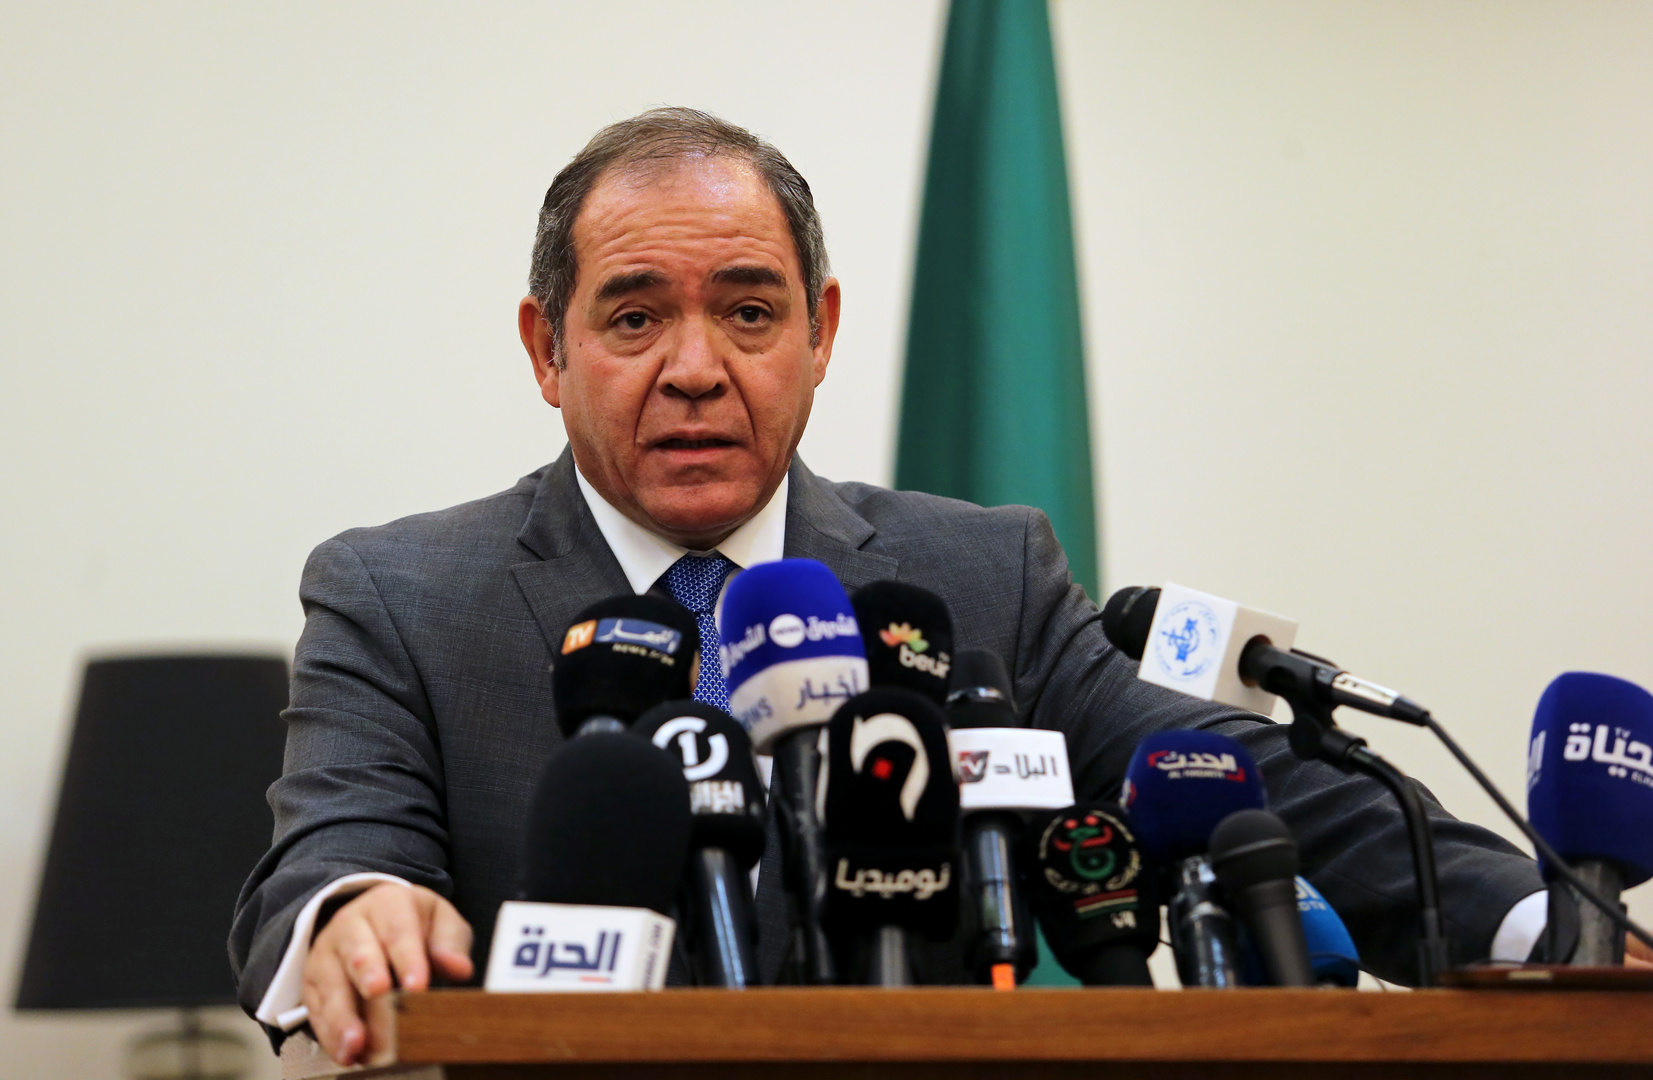 الجزائر: نشترك بحدود طويلة مع ليبيا ونسعى لحل أزمتها سلميا